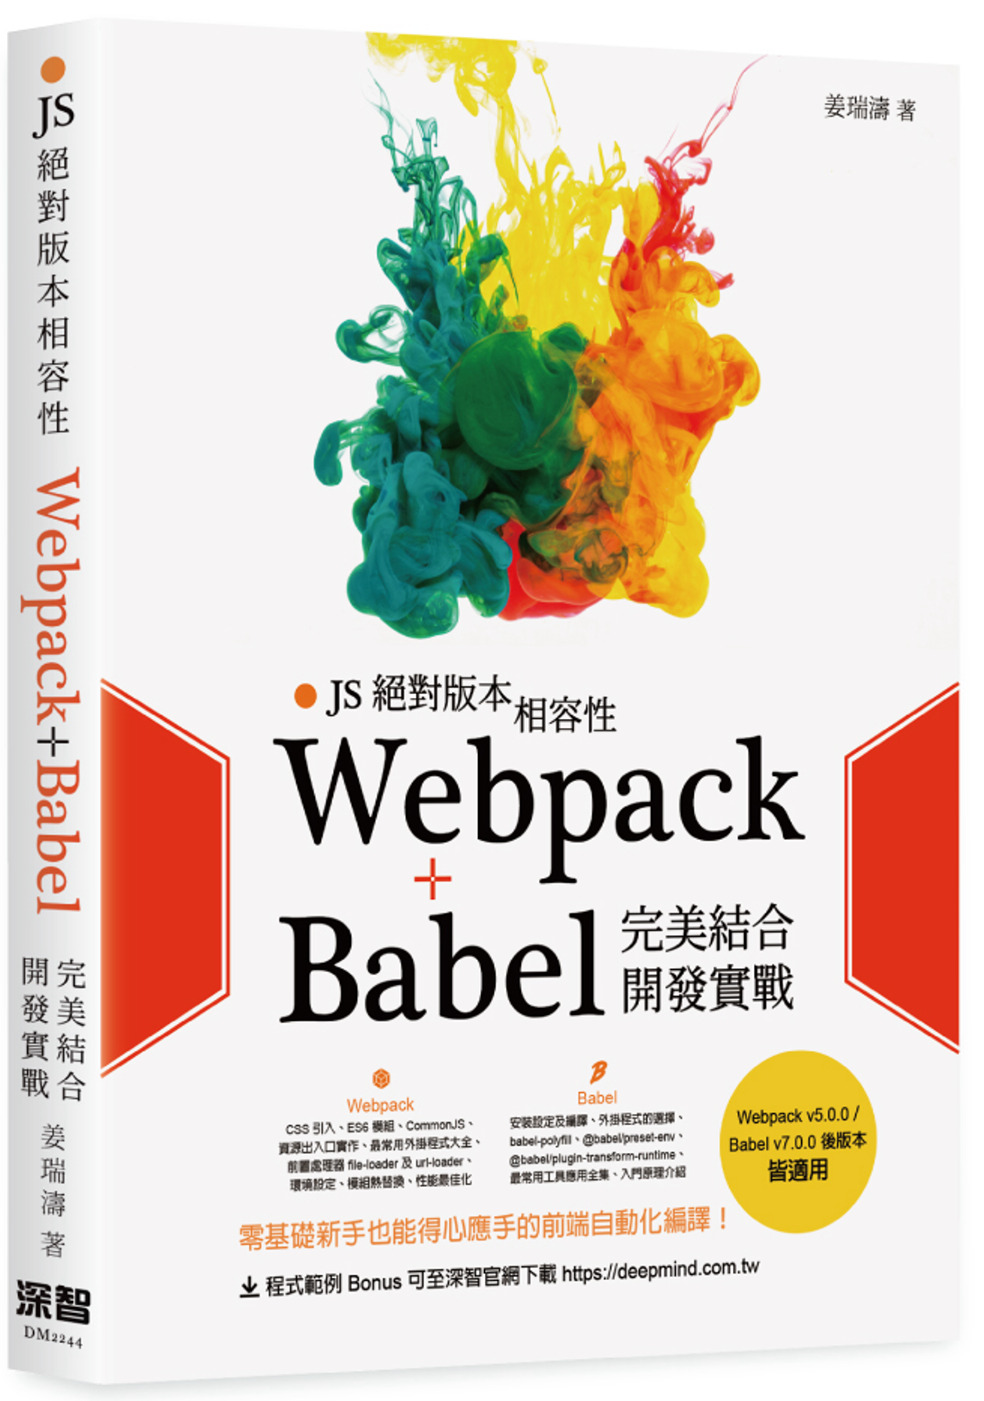 JS絕對版本相容性：Webpack+Babel完美結合開發實戰